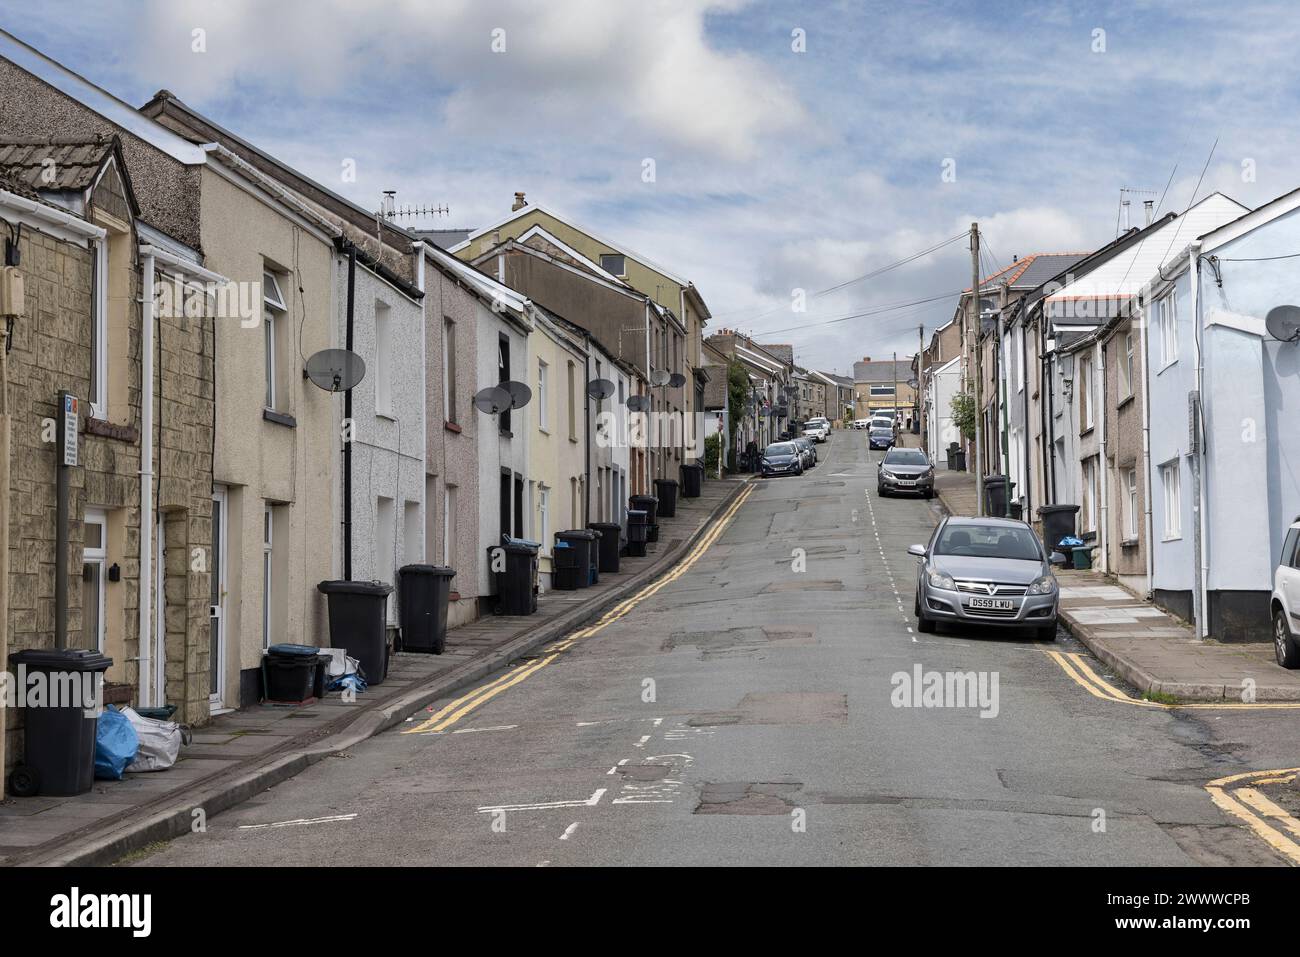 Rue avec maisons mitoyennes et poubelles sur le trottoir en attente de collecte, Brynmawr, pays de Galles, Royaume-Uni Banque D'Images